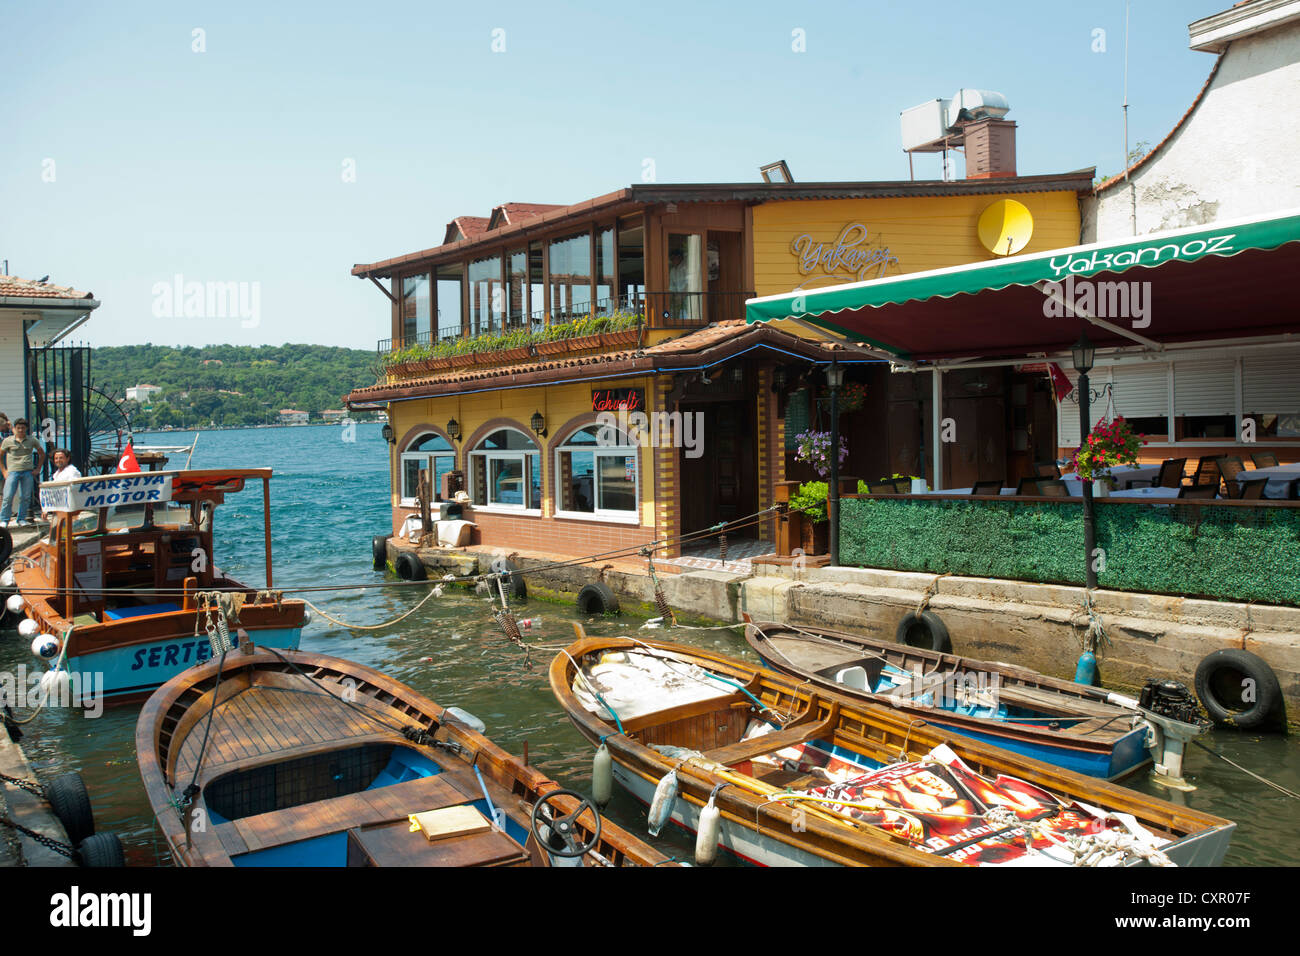 Türkei, Istanbul, Kanlica, Fischlokal Yakamoz am Bosporus Stock Photo -  Alamy